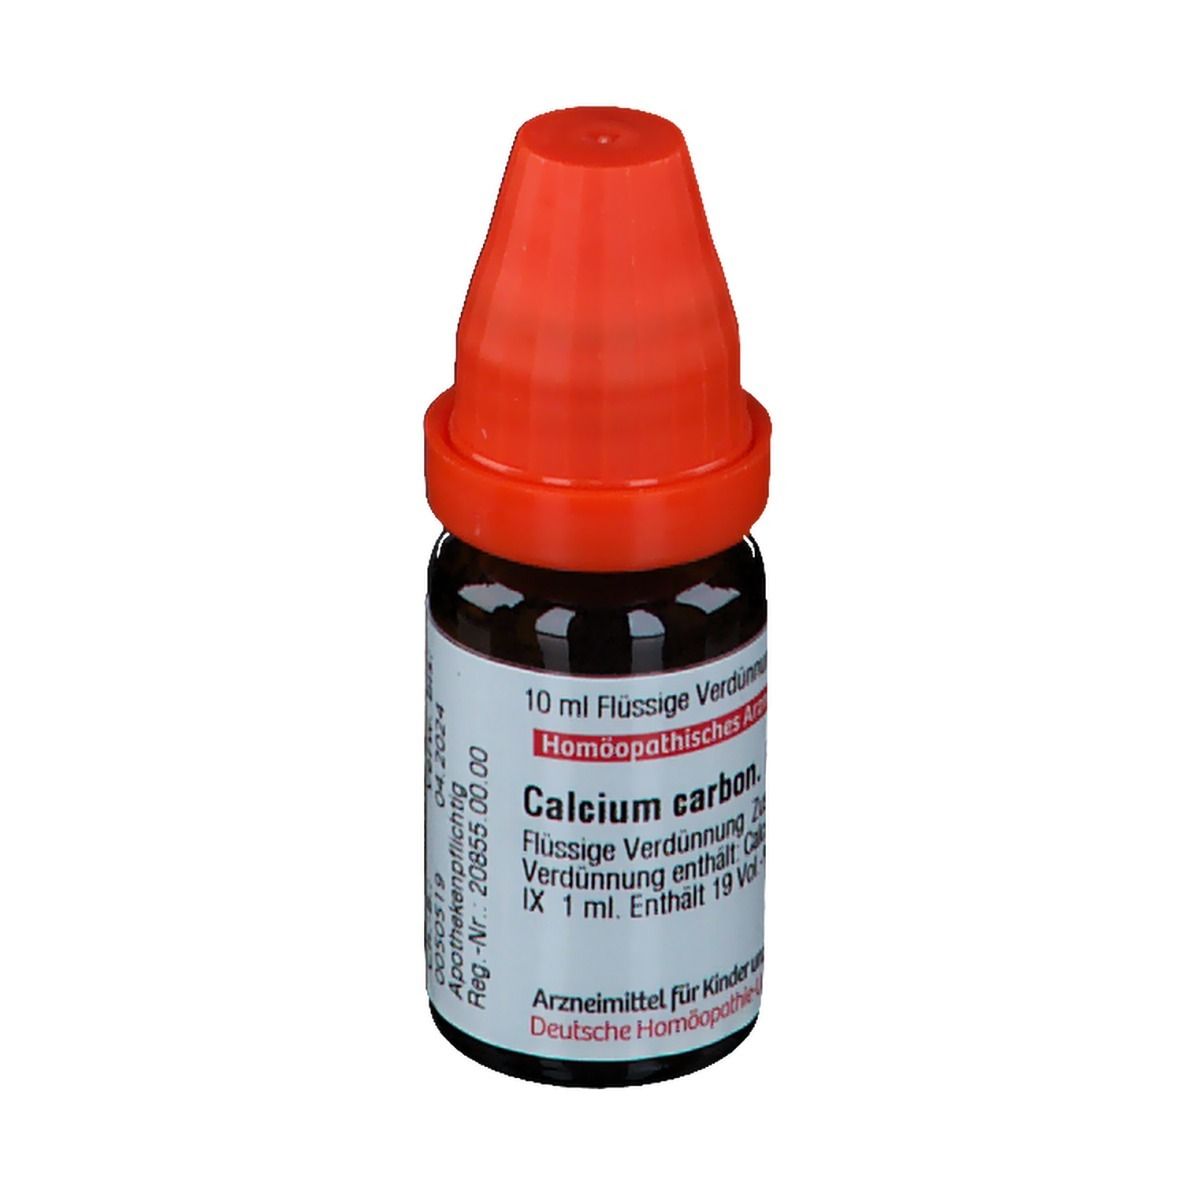 DHU Calcium Carbonicum Hahnemanni LM IX